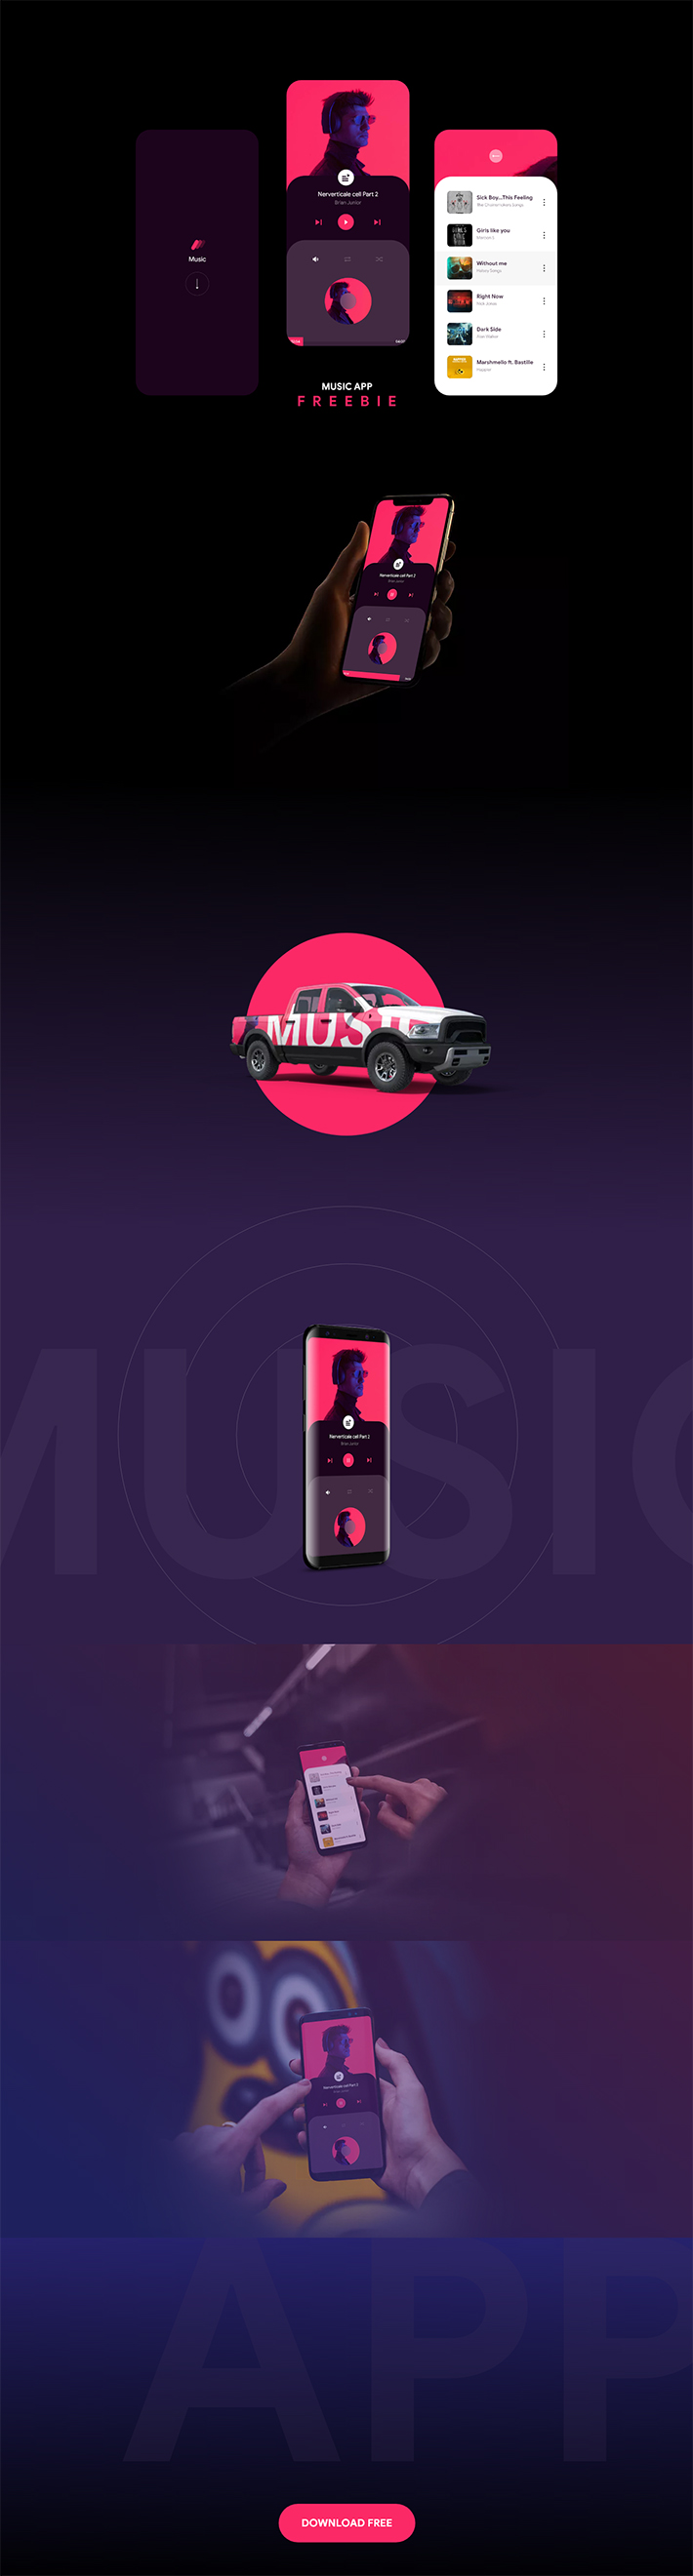 Perfect Music App Design